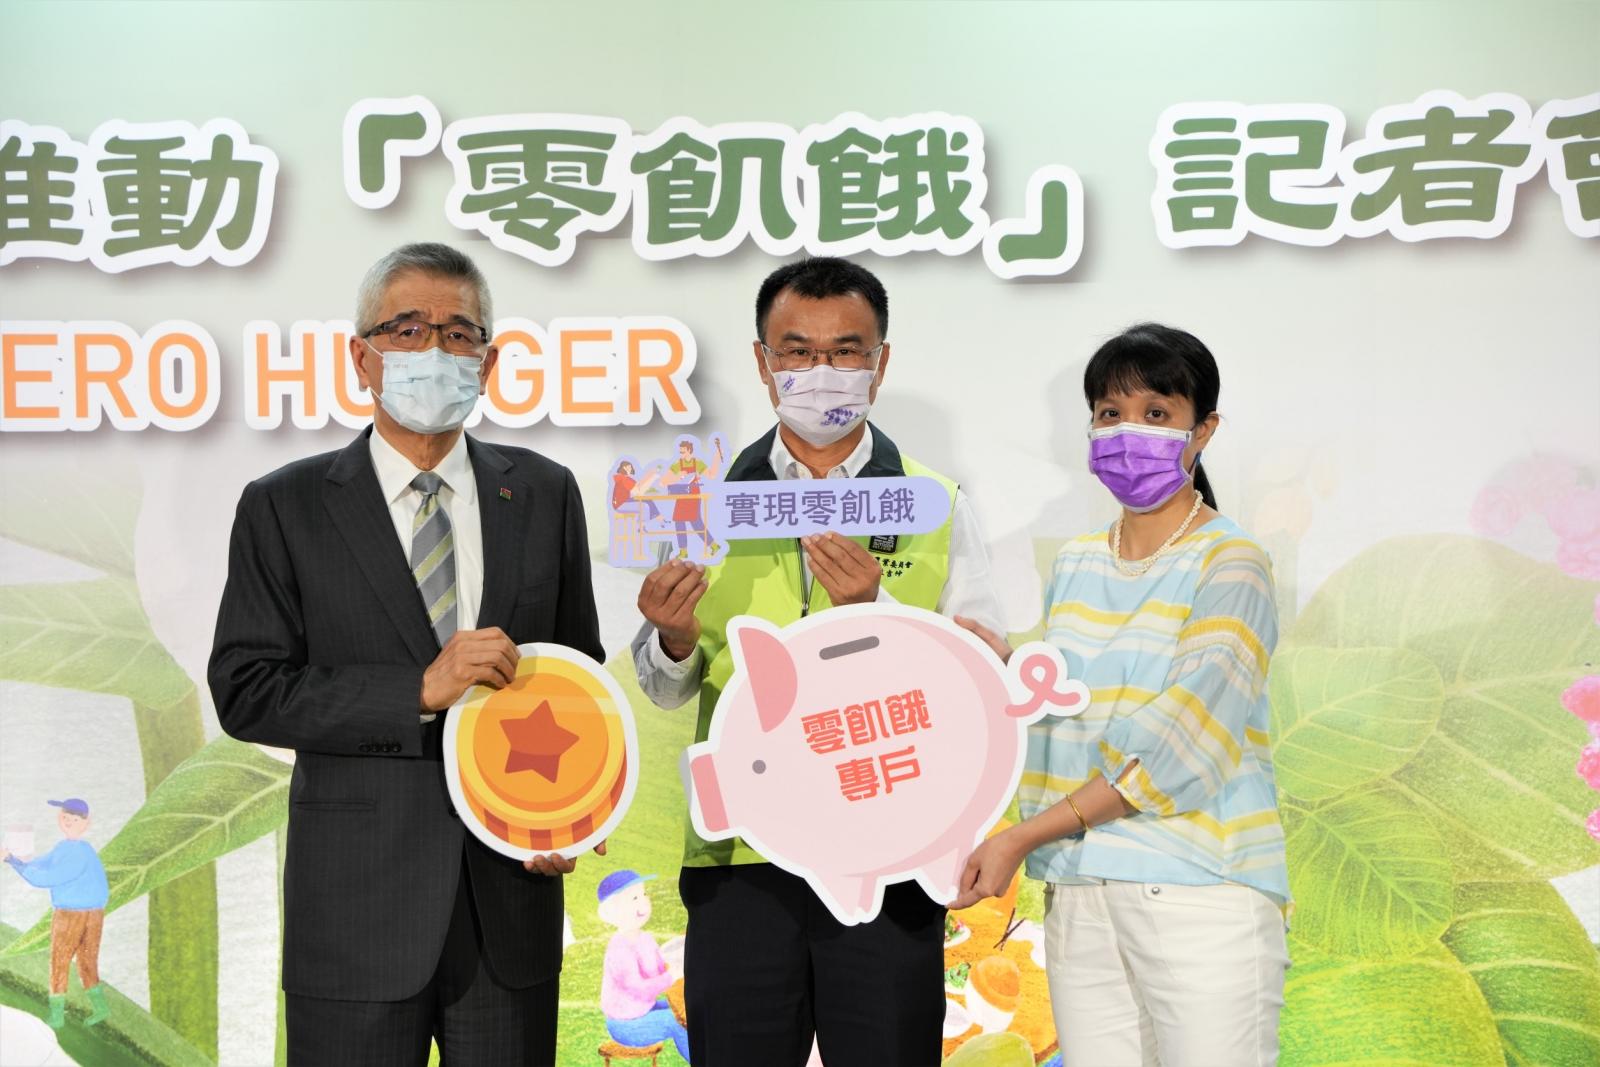 信義企業集團創辦人周俊吉響應支持零飢餓、企業贊助